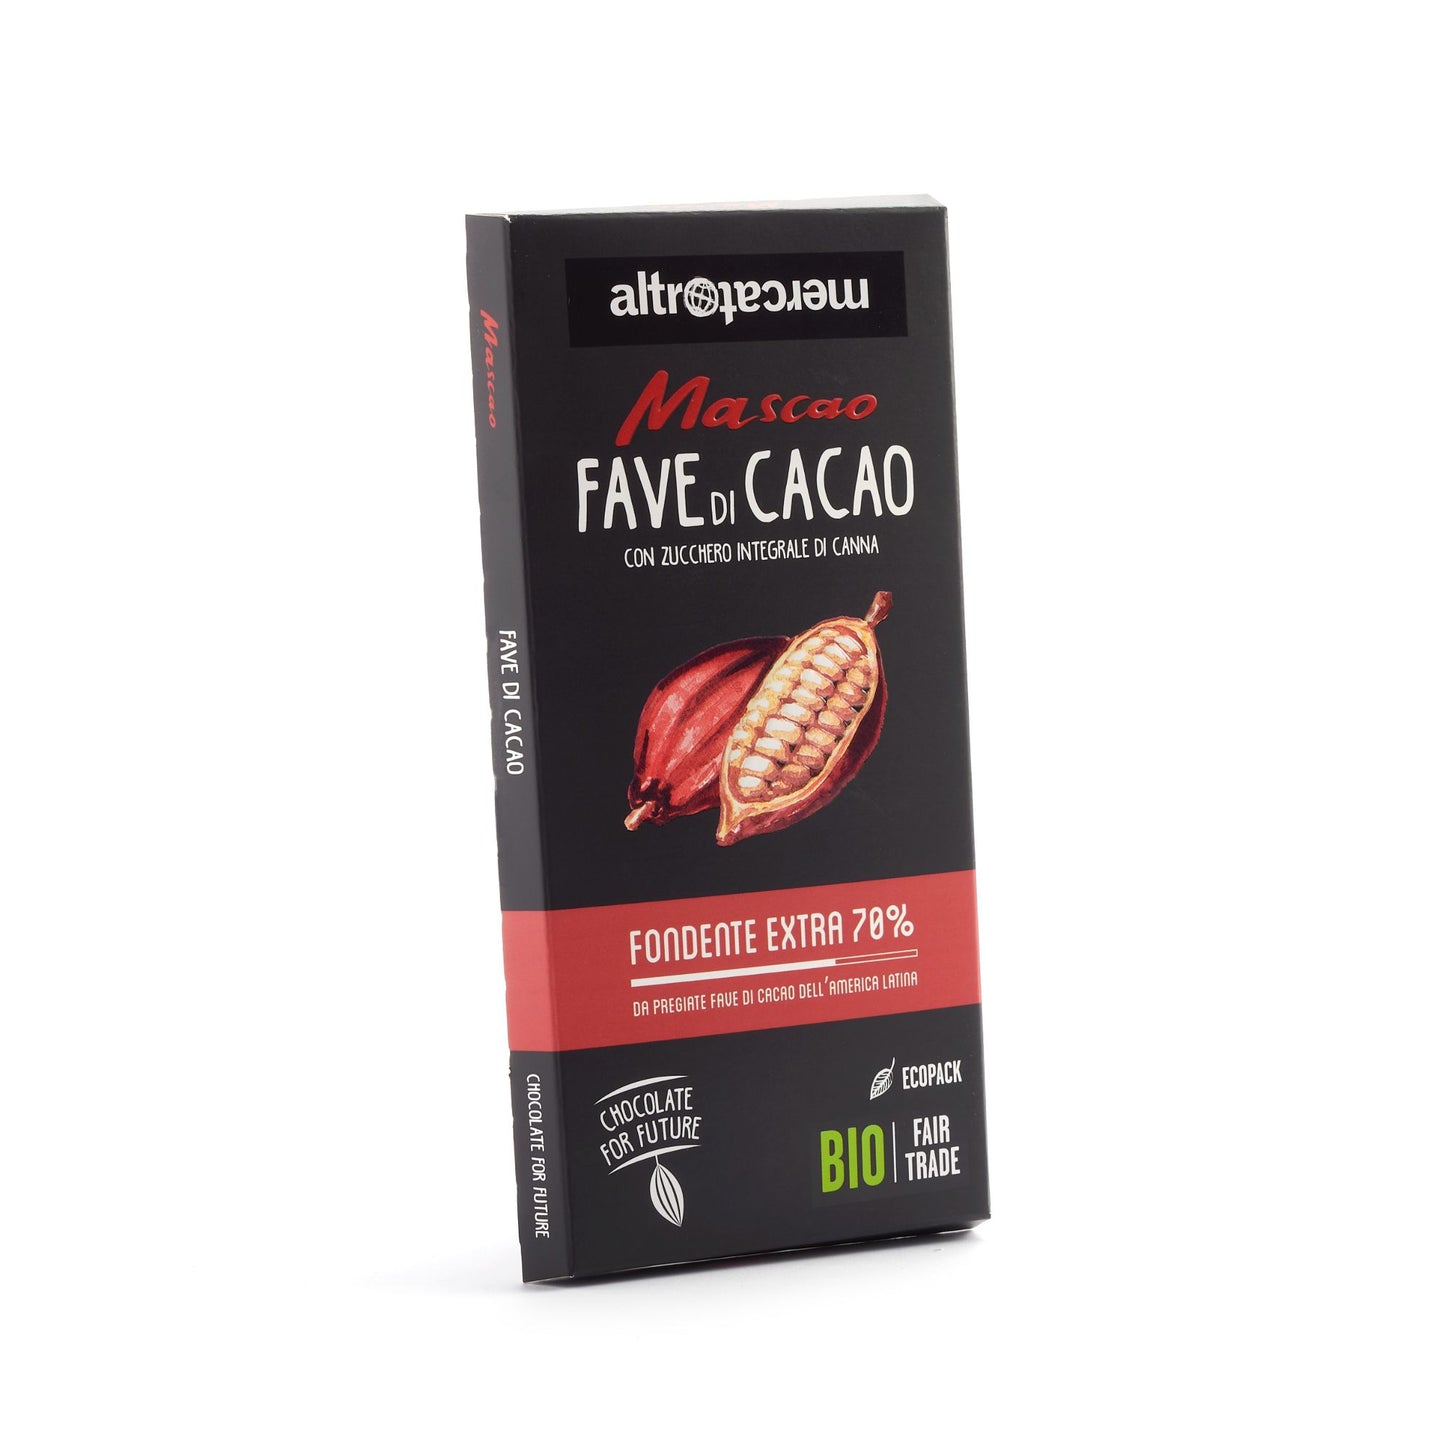 Cioccolato Mascao fondente extra fave di cacao - bio | 100 g